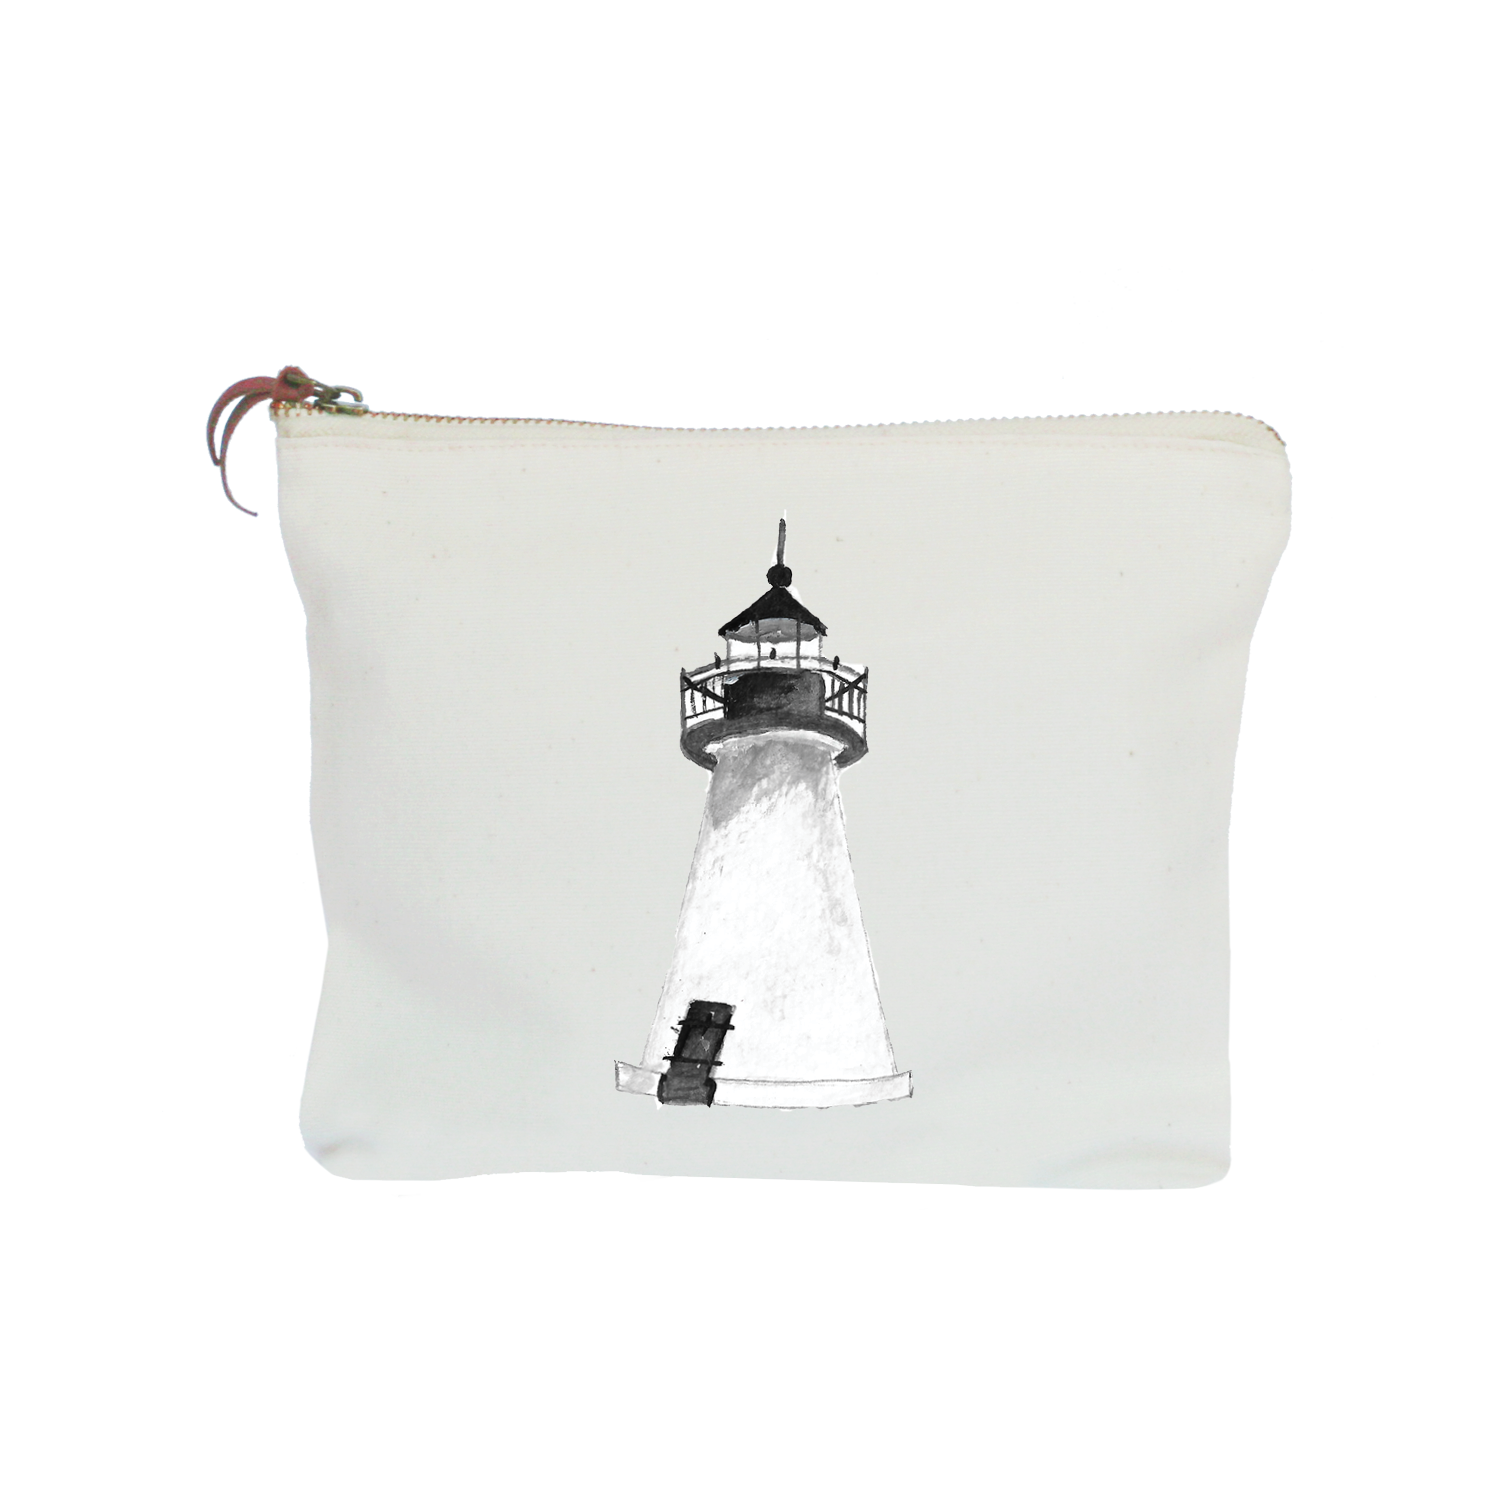 mattapoisett lighthouse zipper pouch